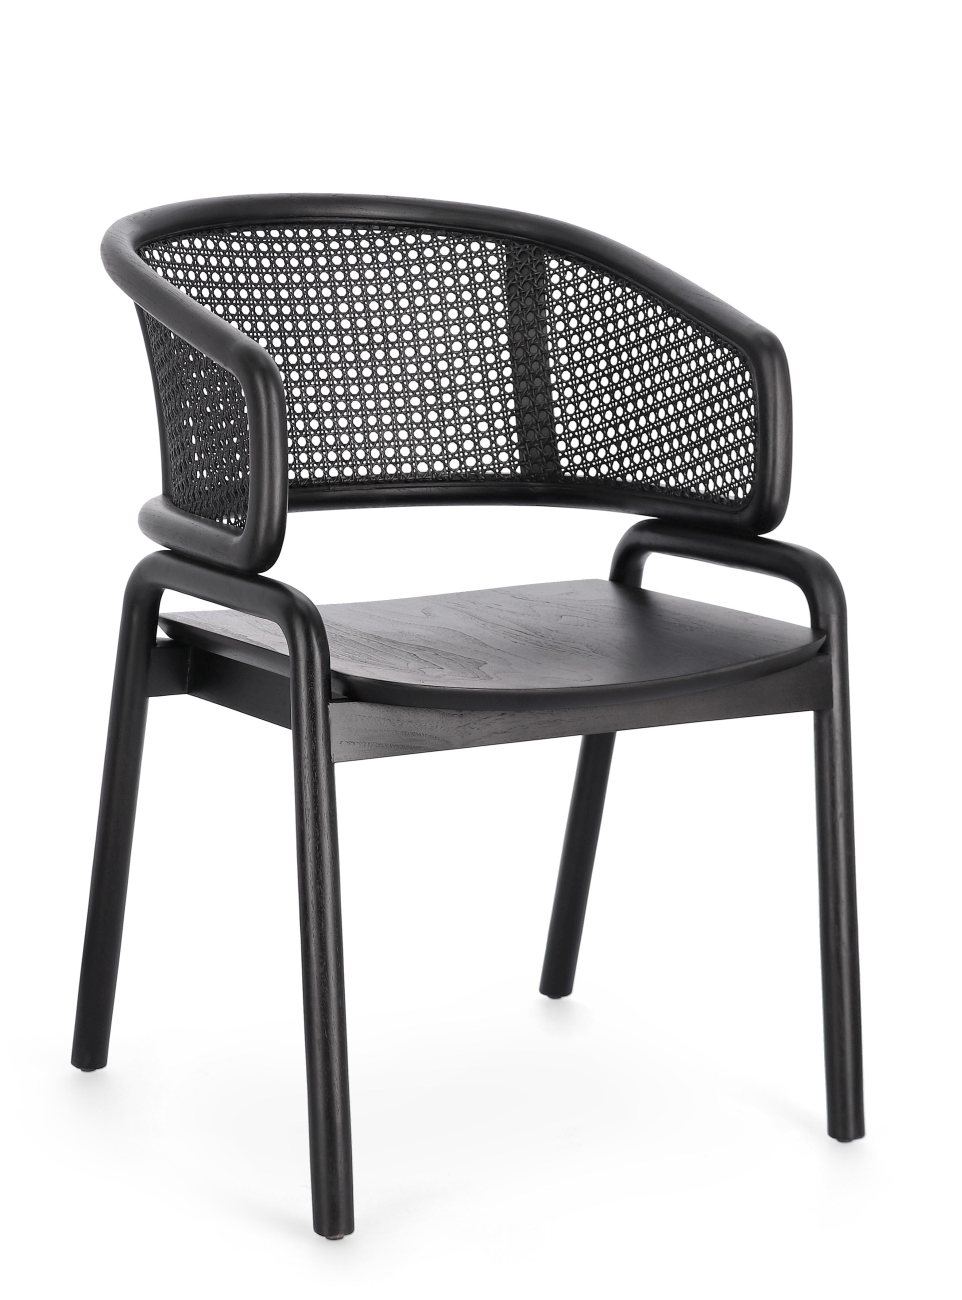 Der Esszimmerstuhl Keith überzeugt mit seinem modernen Stil. Gefertigt wurde er aus Teakholz, welcher einen schwarzen Farbton besitzt. Die Rückenlehne ist aus Rattan und hat eine schwarze Farbe. Der Stuhl besitzt eine Sitzhöhe von 44 cm.